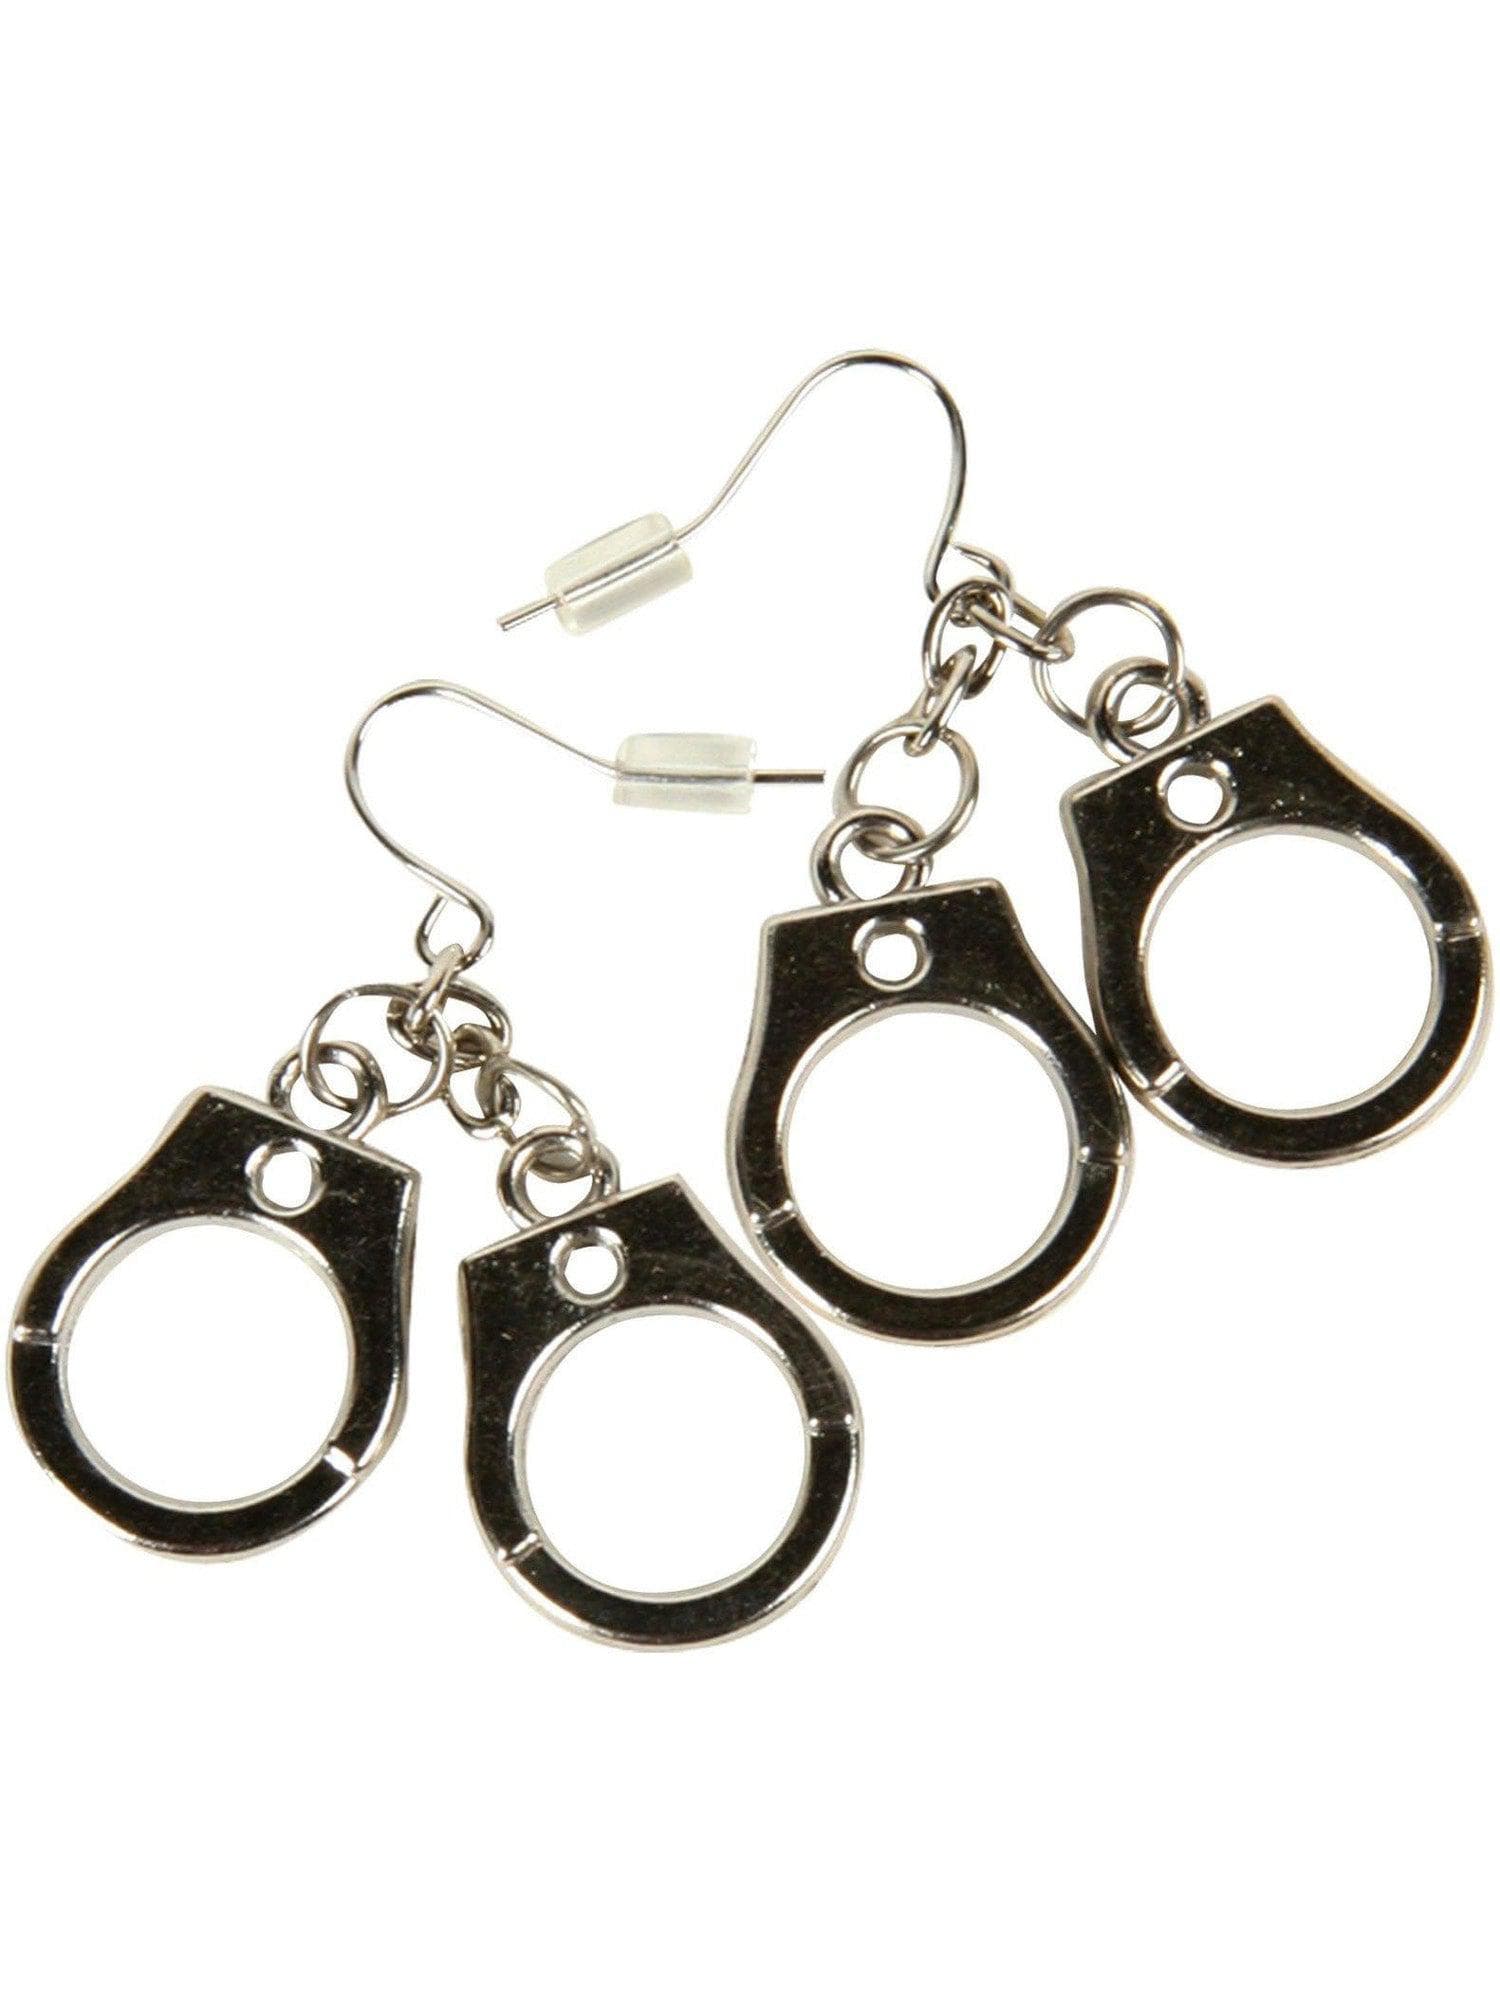 Handcuff Earrings - costumes.com